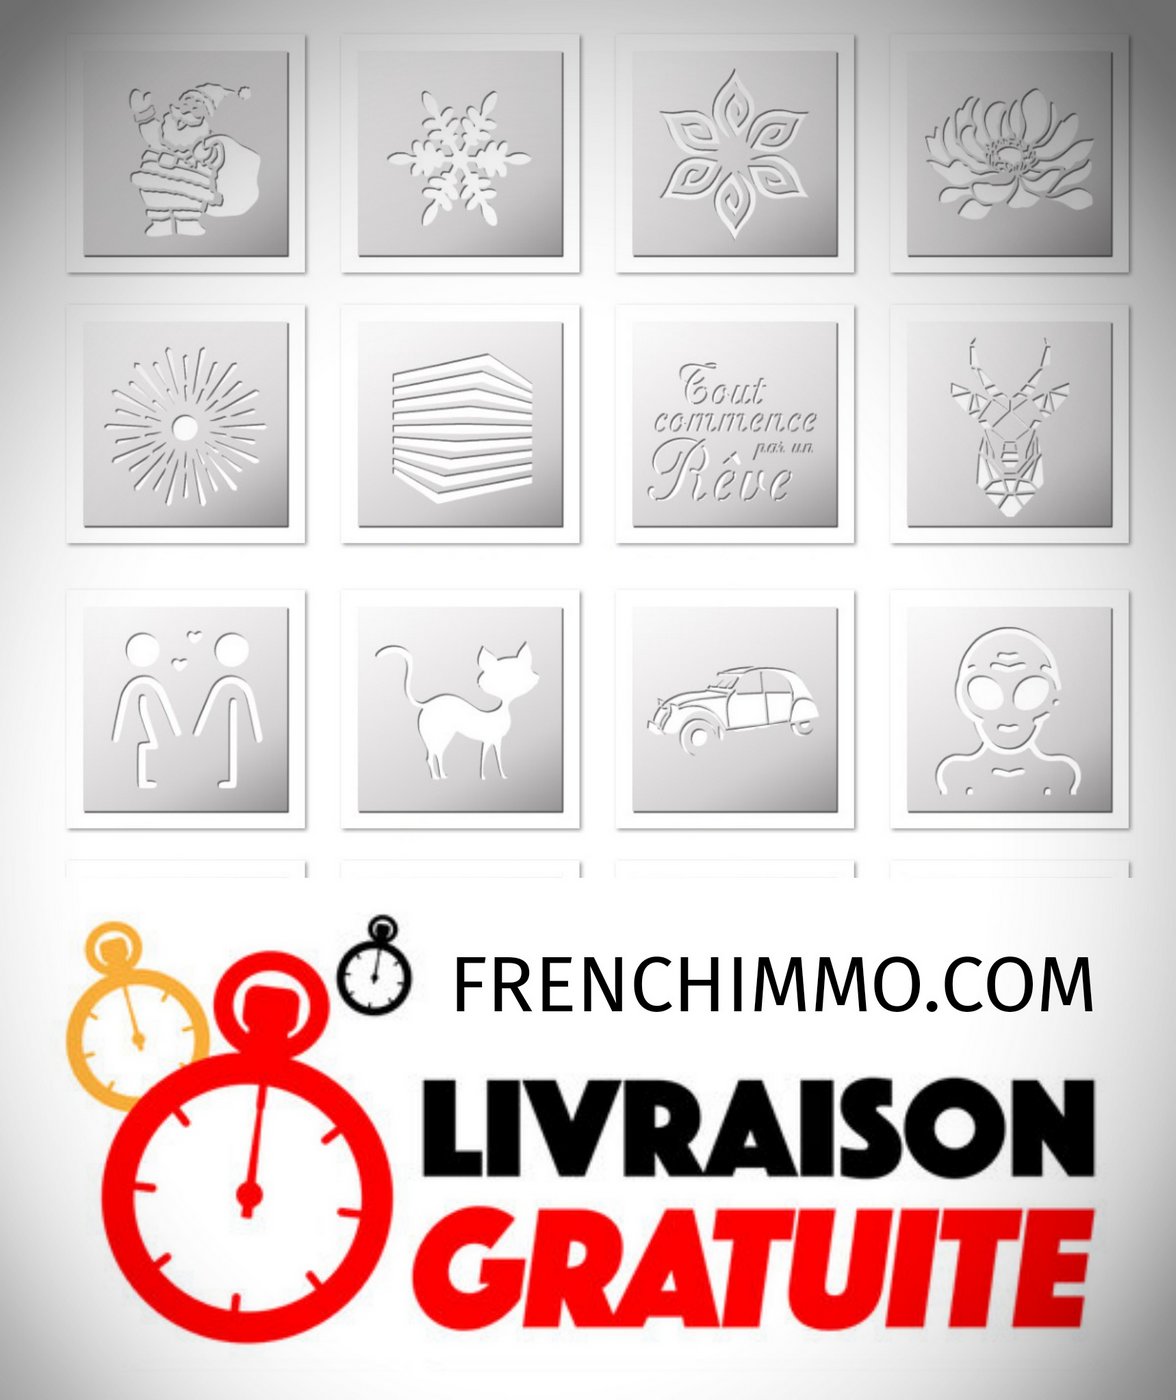 Pochoirs FrenchIMMO.com, dernières nouveautés !